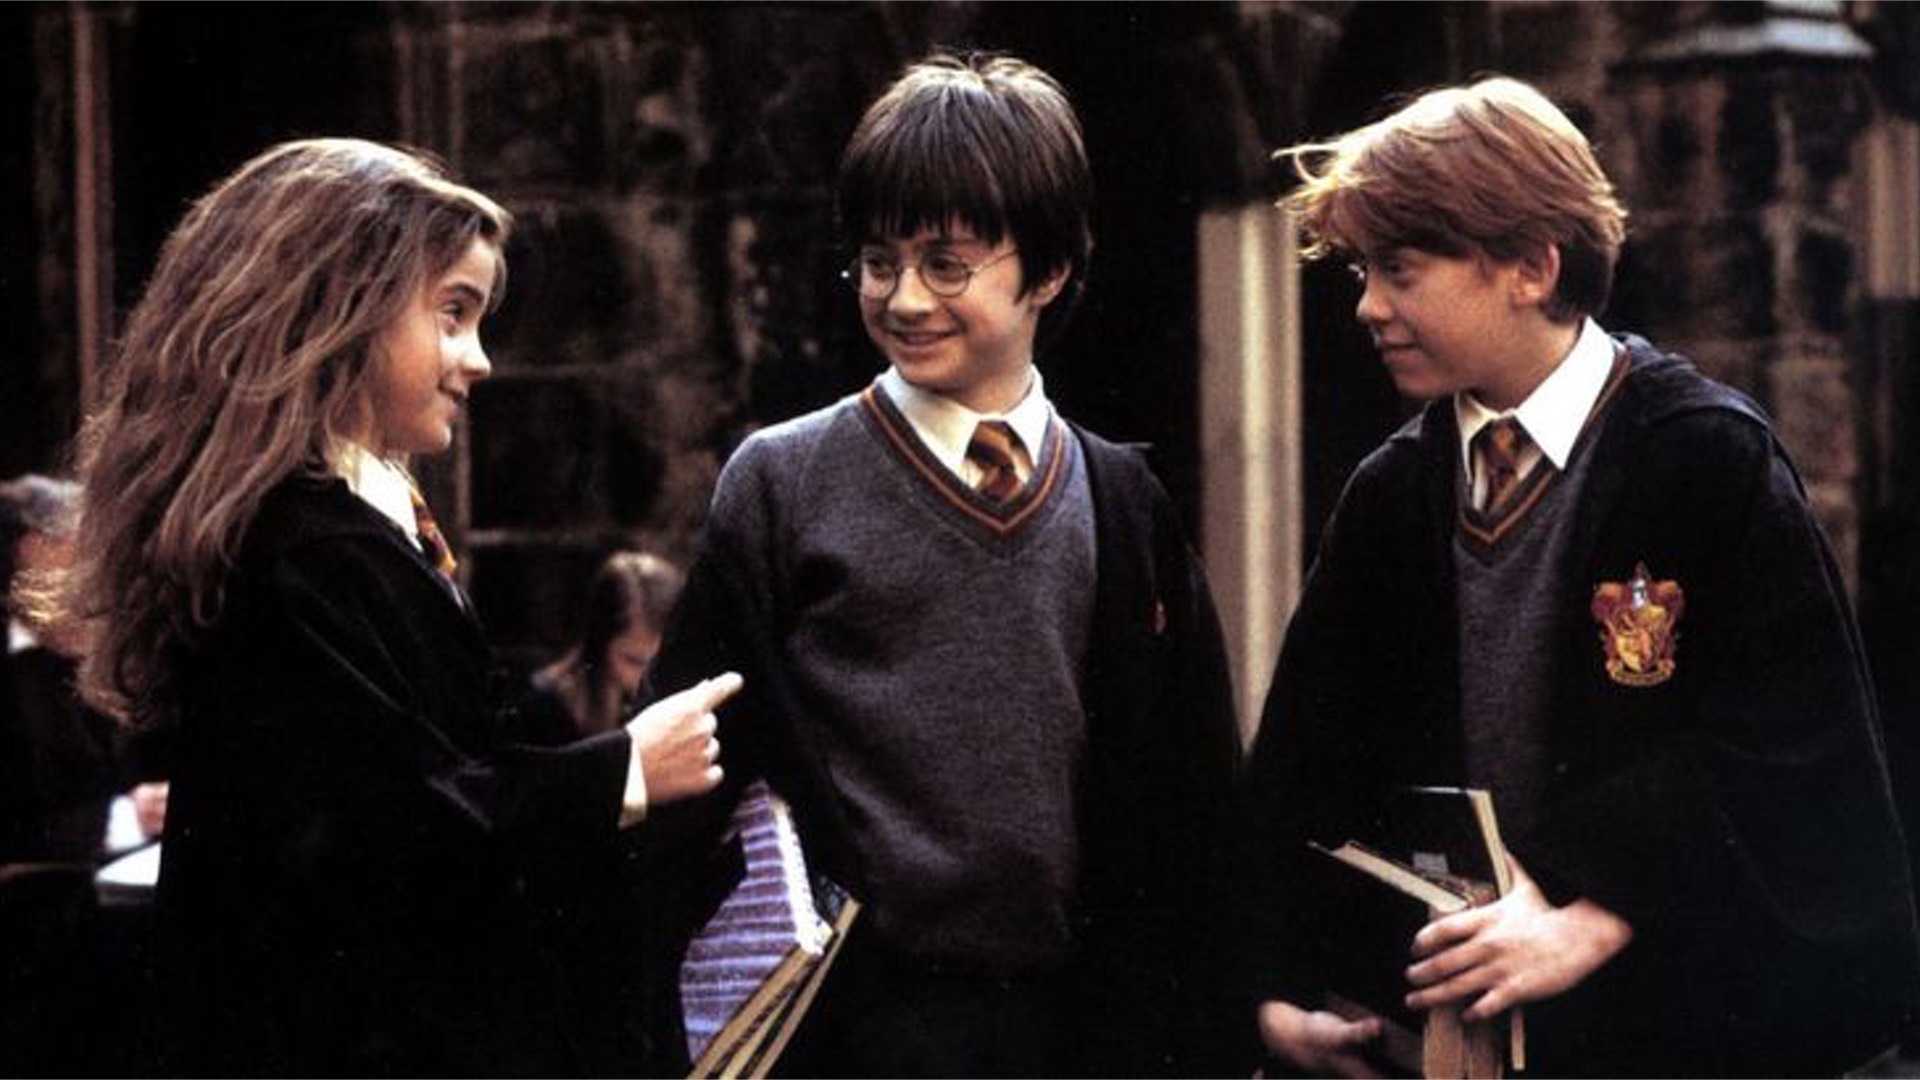 J.K. Rowling a-t-elle vraiment été exclue de la réunion Harry Potter à cause de sa transphobie ?